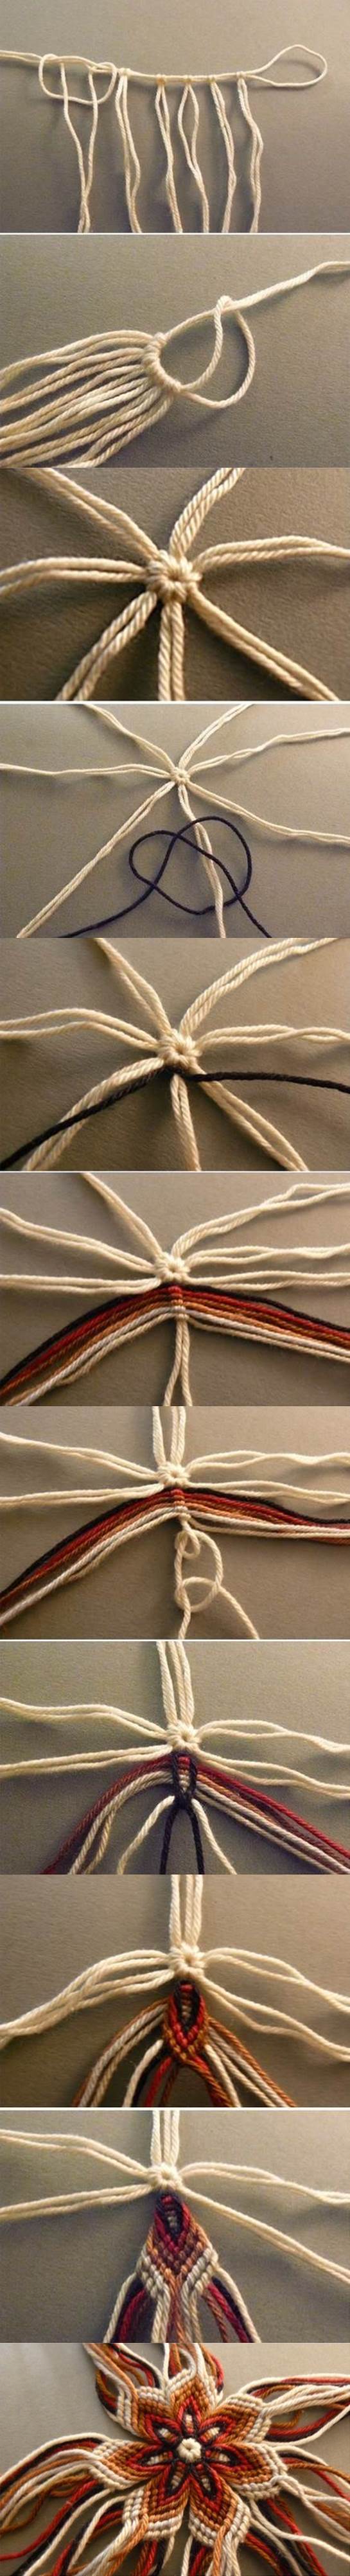 DIY Weaving Flower of Yarn